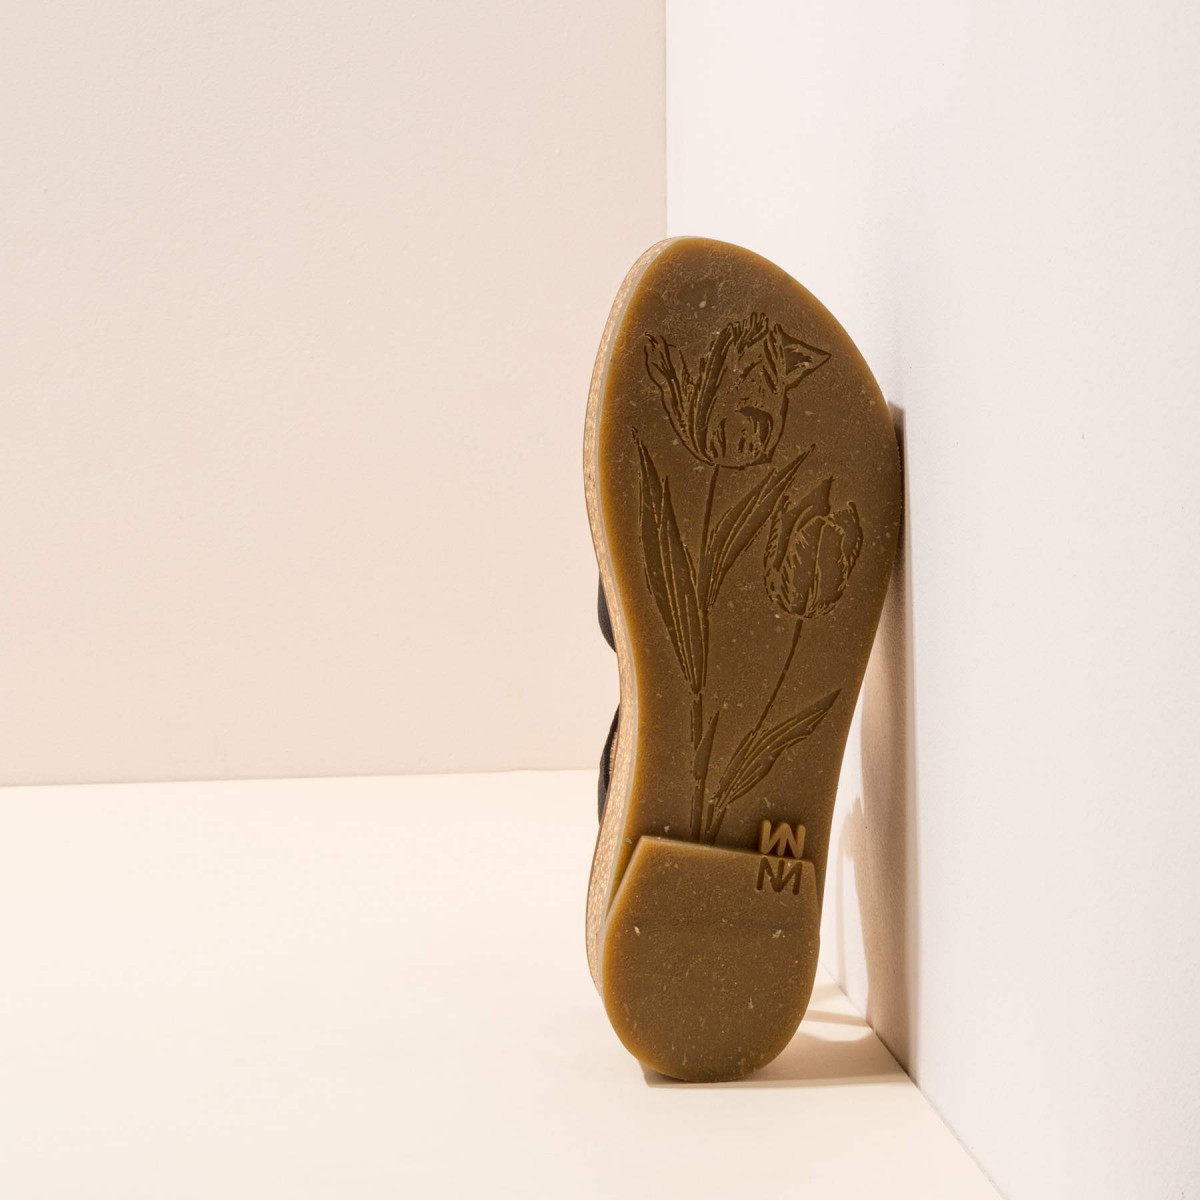 miMaO Chaussures Fabriqués en Espagne Technologie de Confort Sandale Romaine à Plateforme